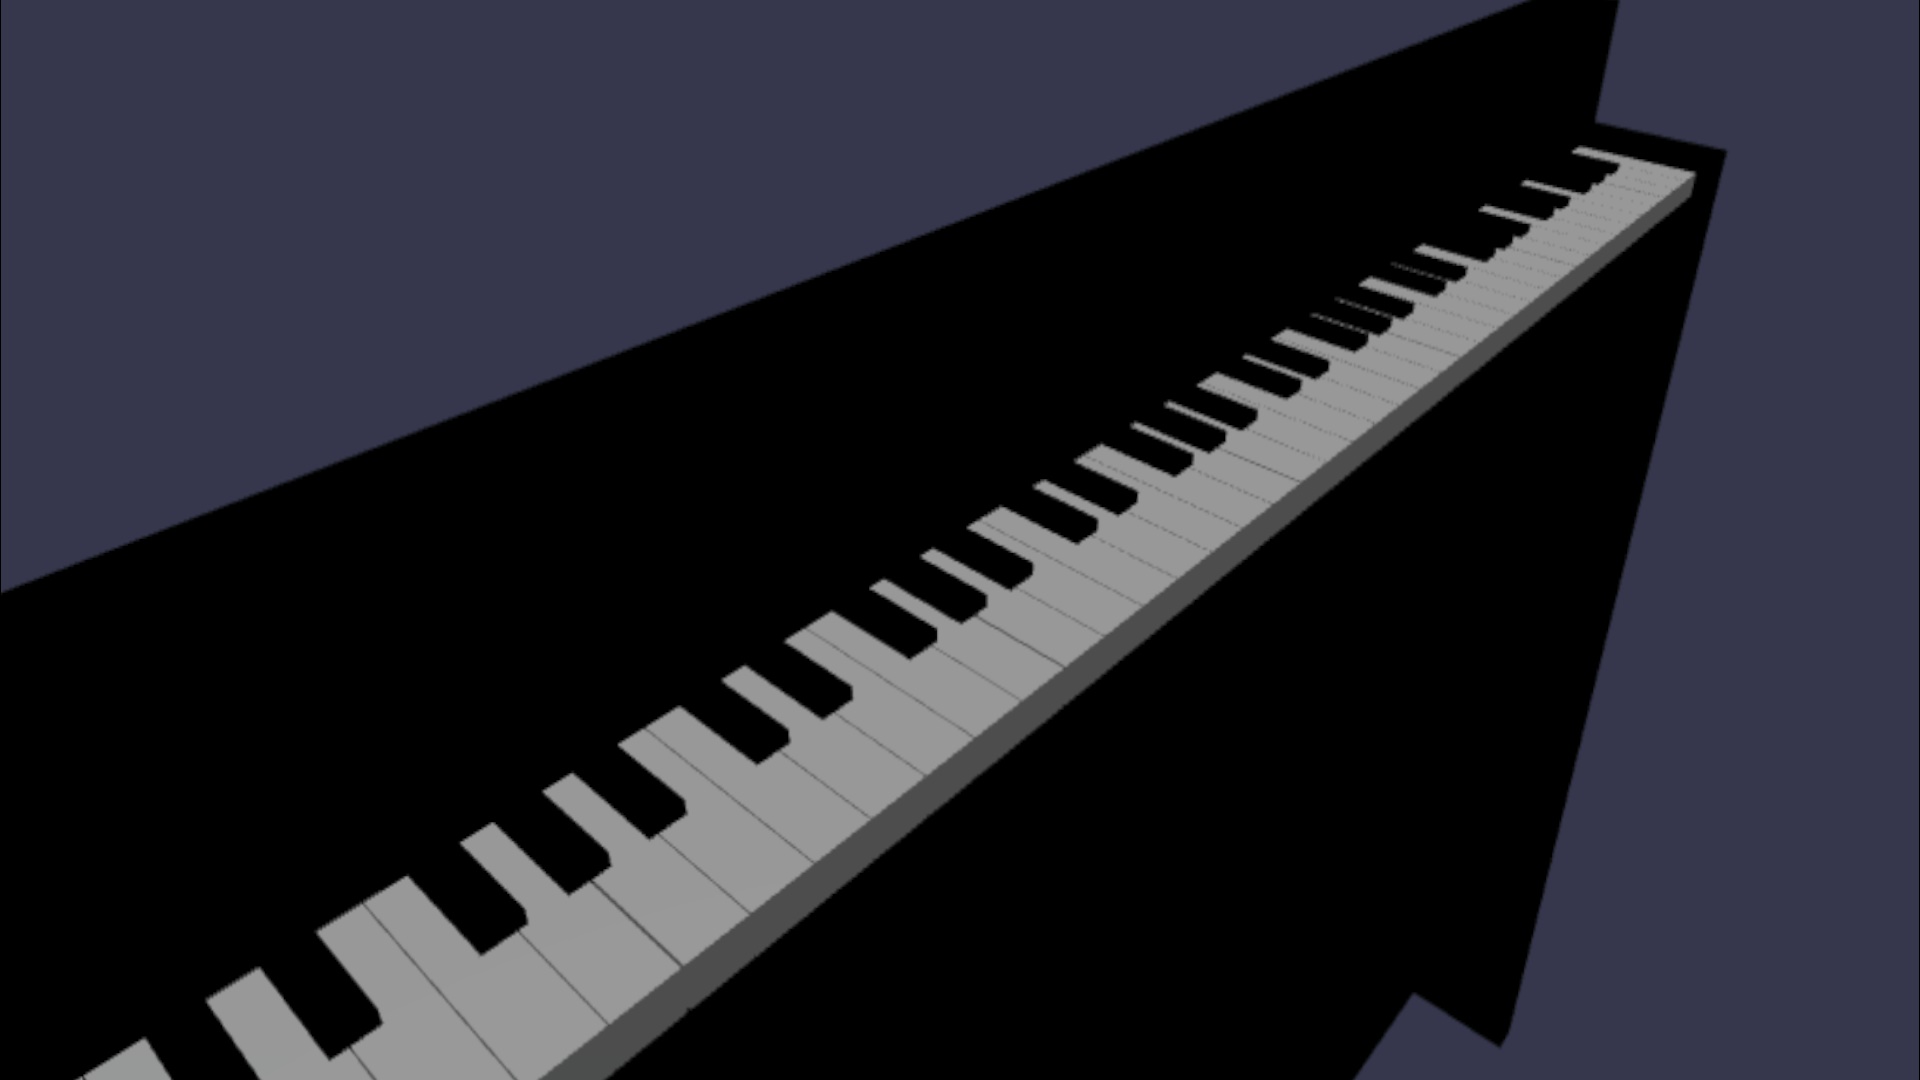 Virtual Piano Keyboard With JavaScript - piano.js